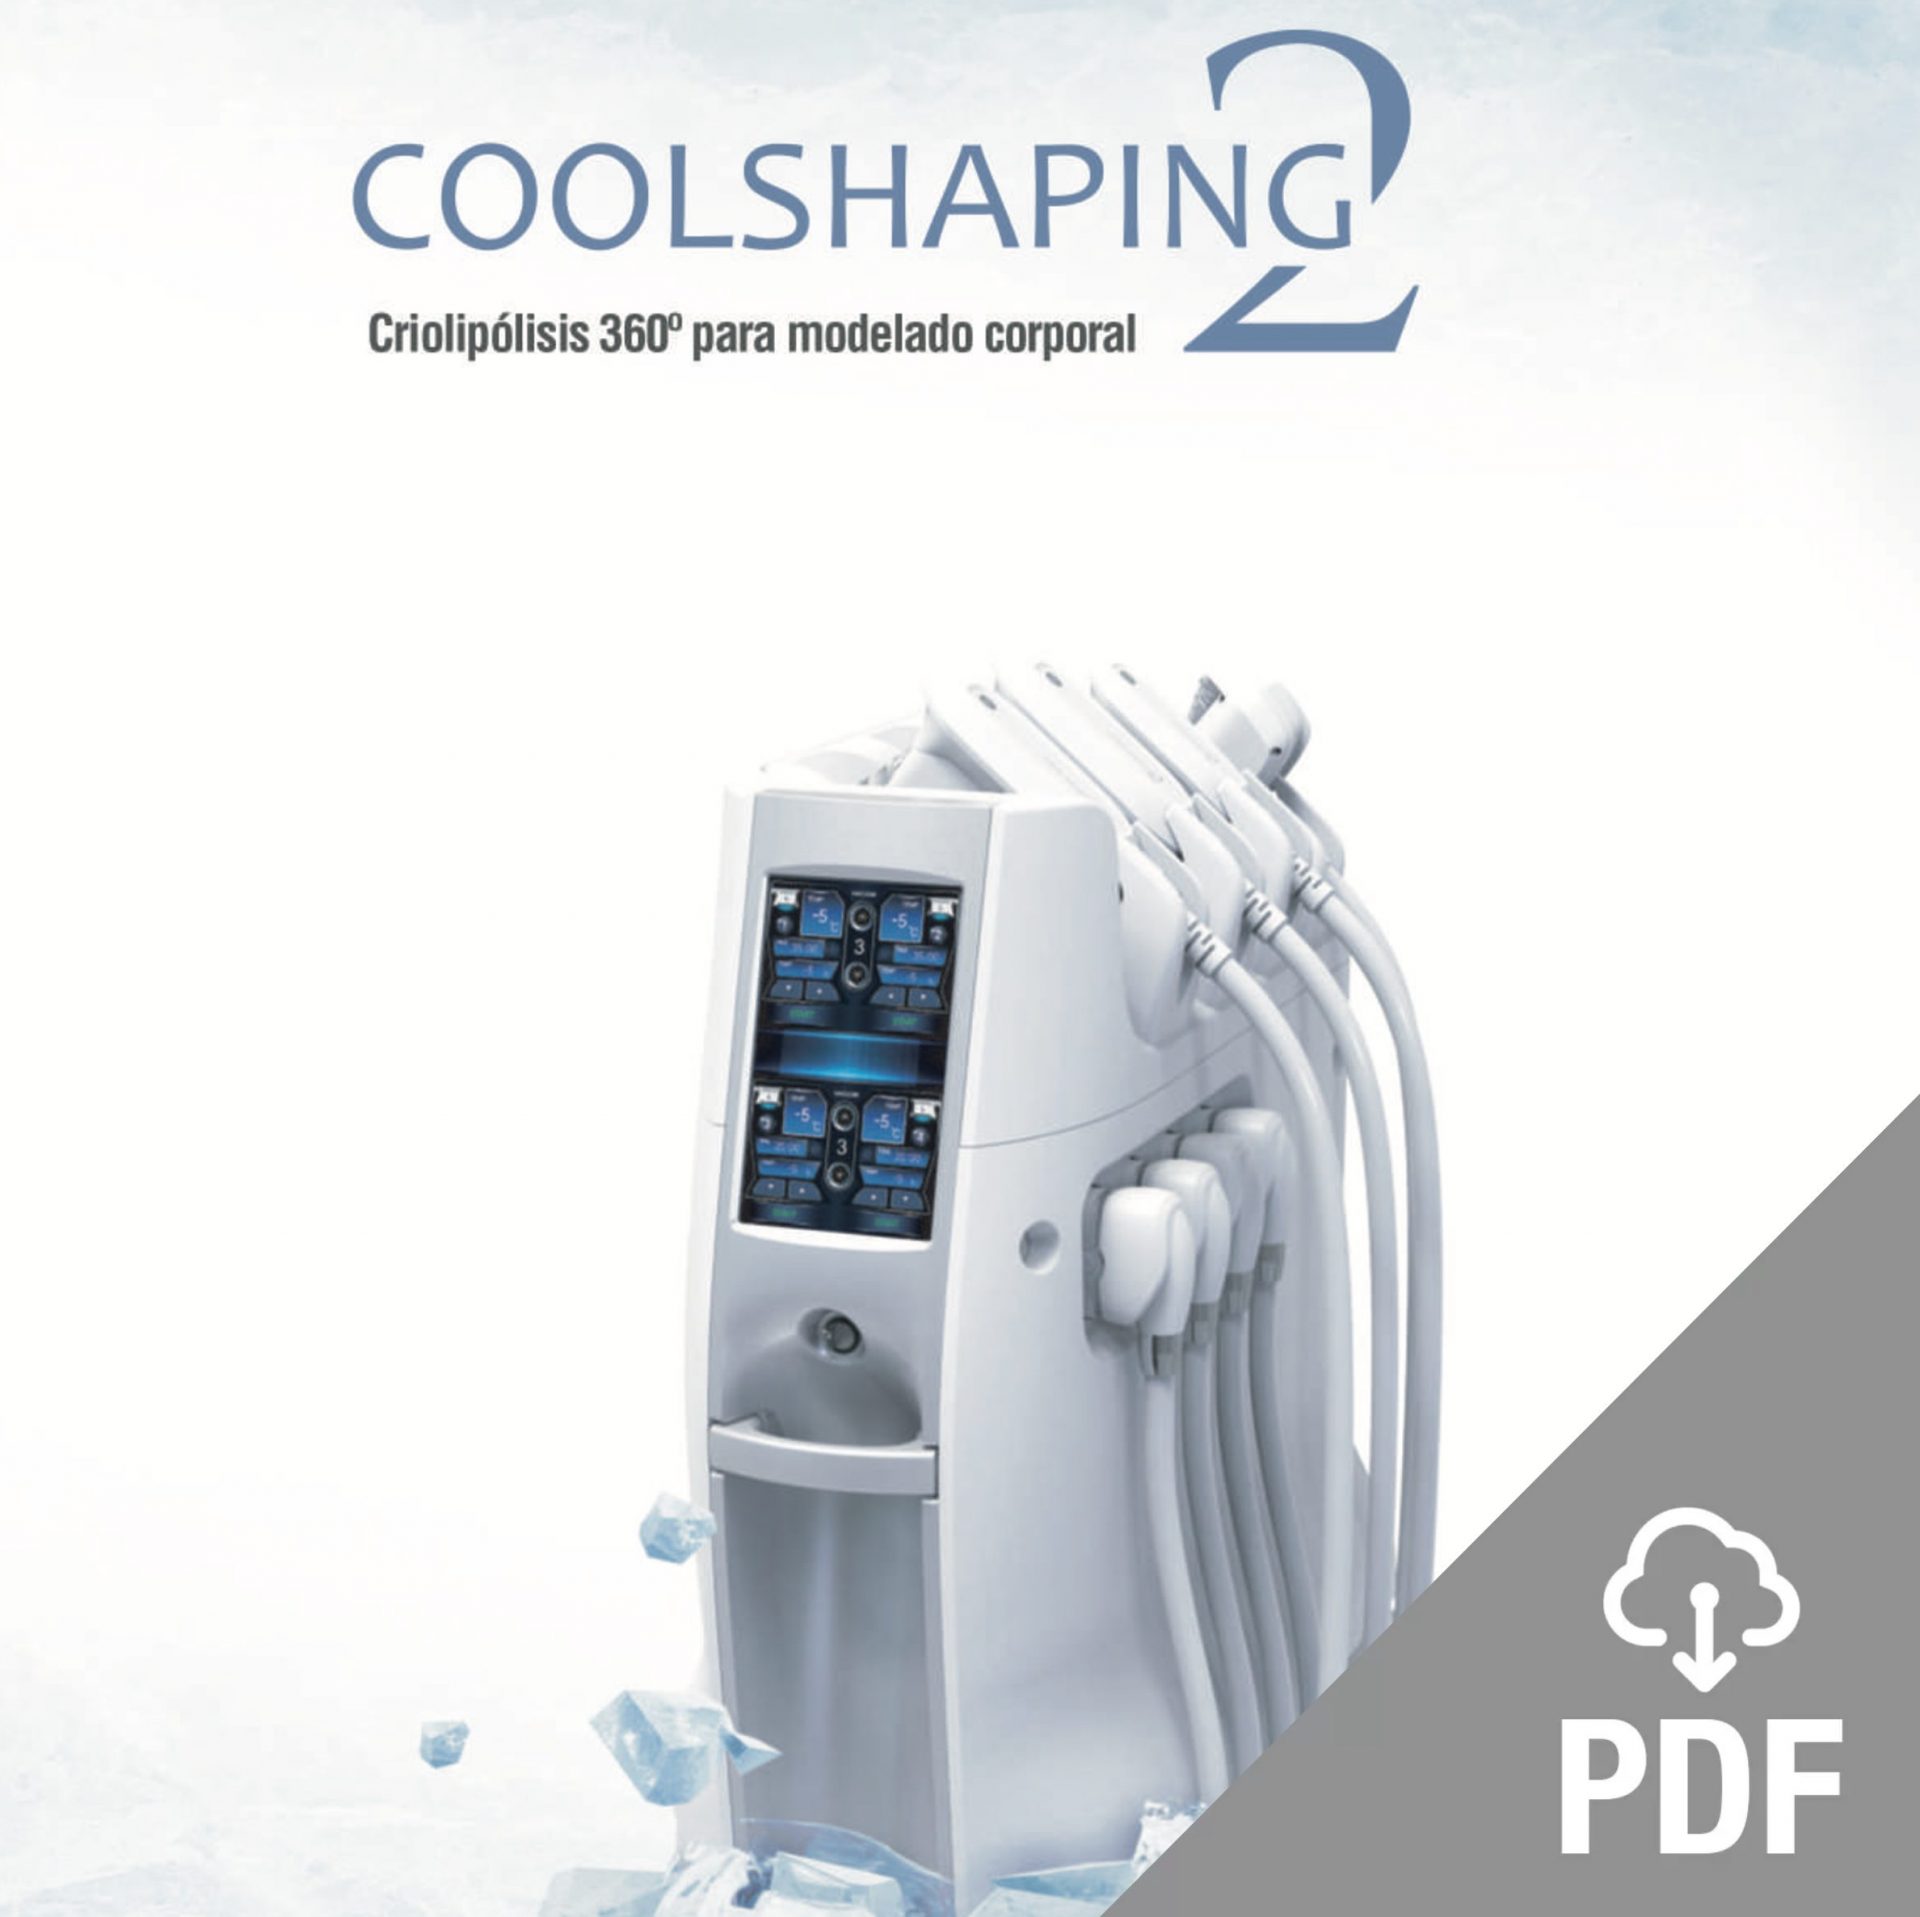 COOLSHAPING2 es un dispositivo de criolipólisis. La combinación de tecnología Crío y Vacuum crea un efecto adelgazante seguro y protegido.